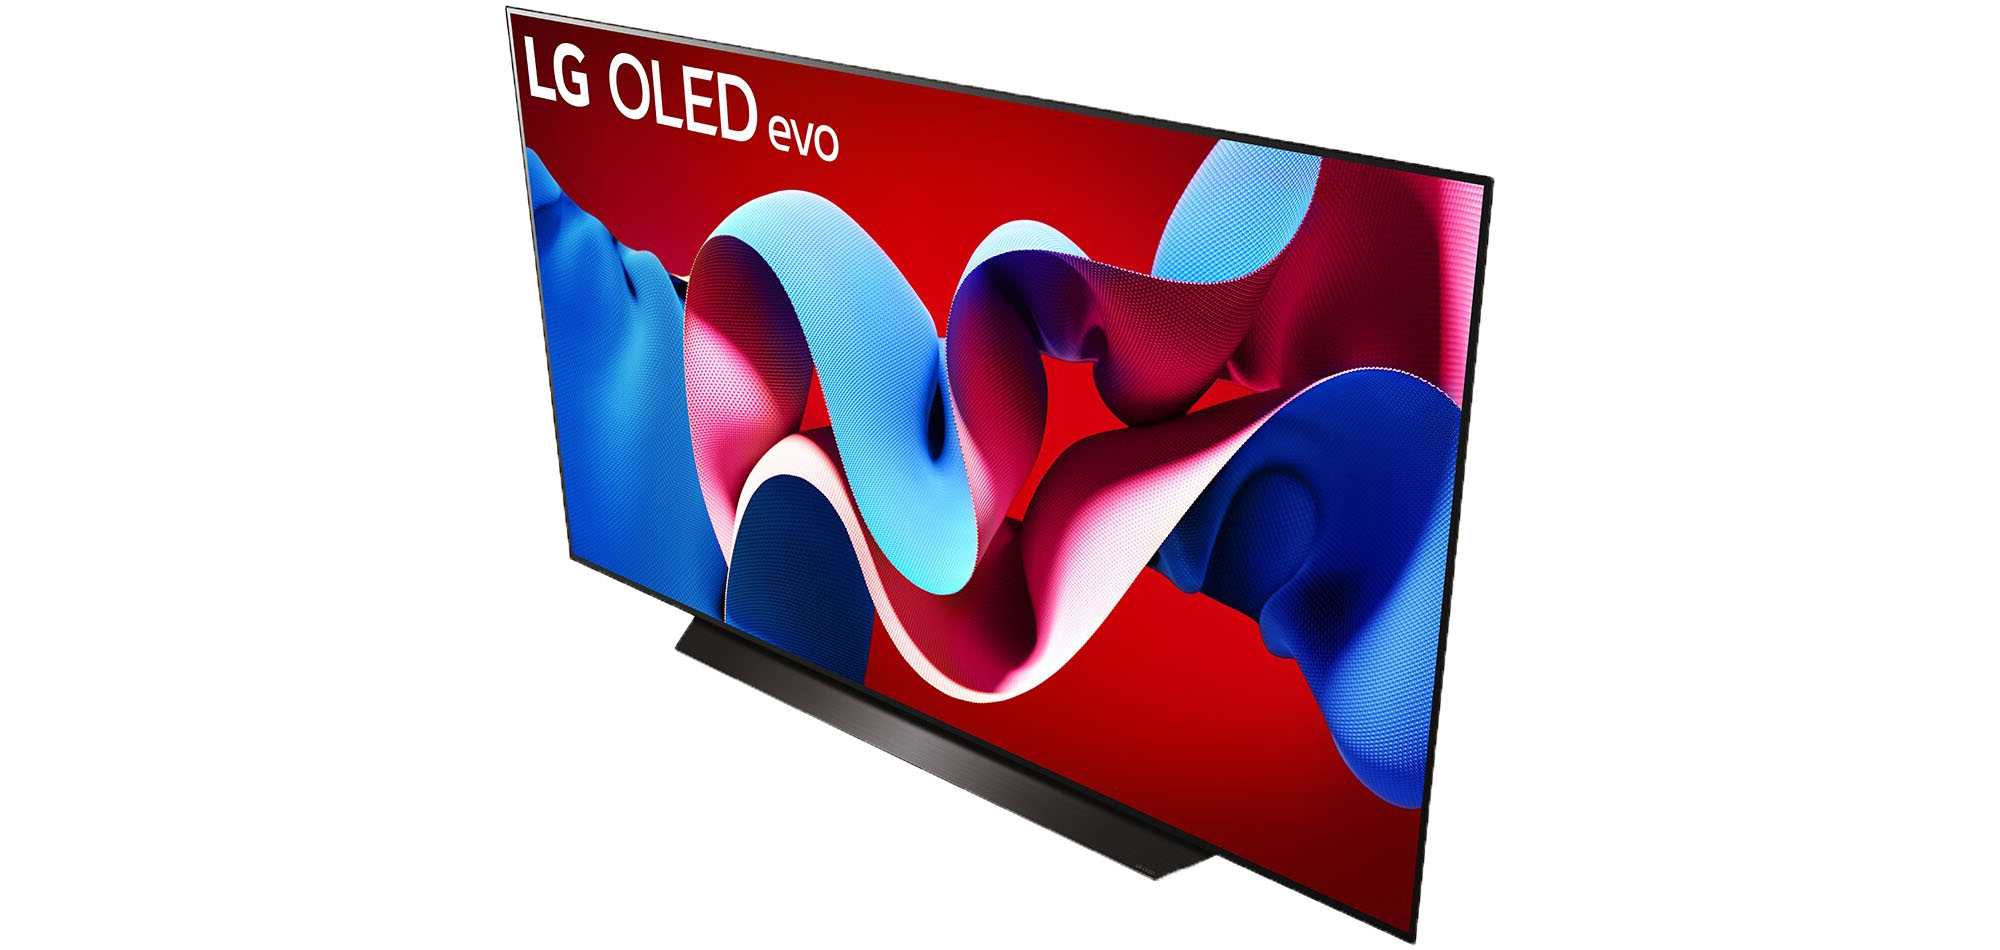 Der größte OLED-Fernseher aus der aktuellen LG OLED C4 Serie hat eine Bilddiagonale von stolzen 211 cm.